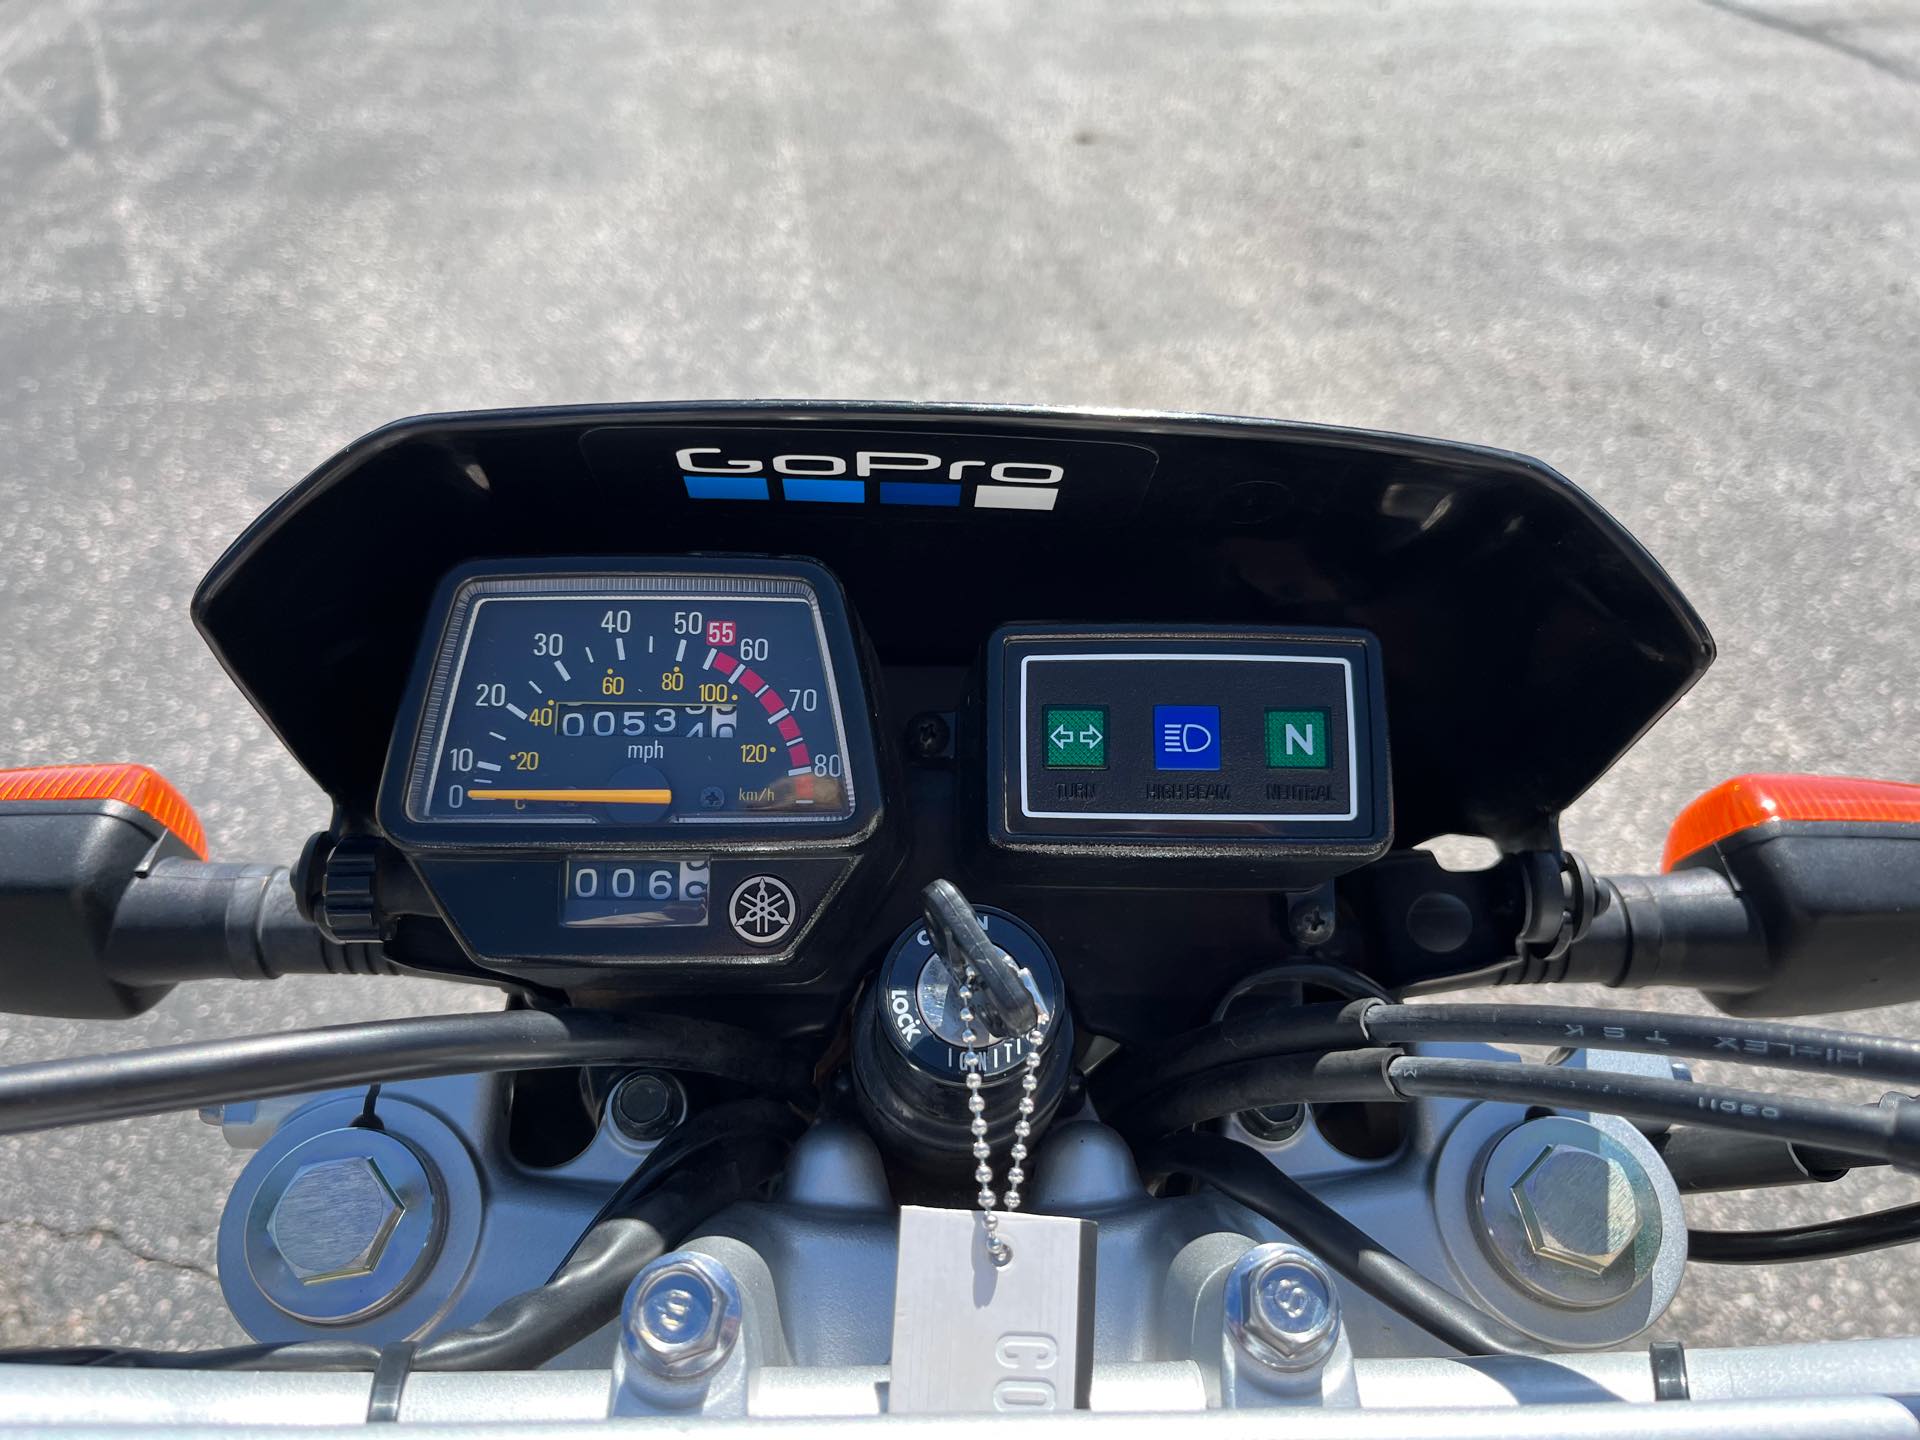 2020 Yamaha TW 200 at Mount Rushmore Motorsports